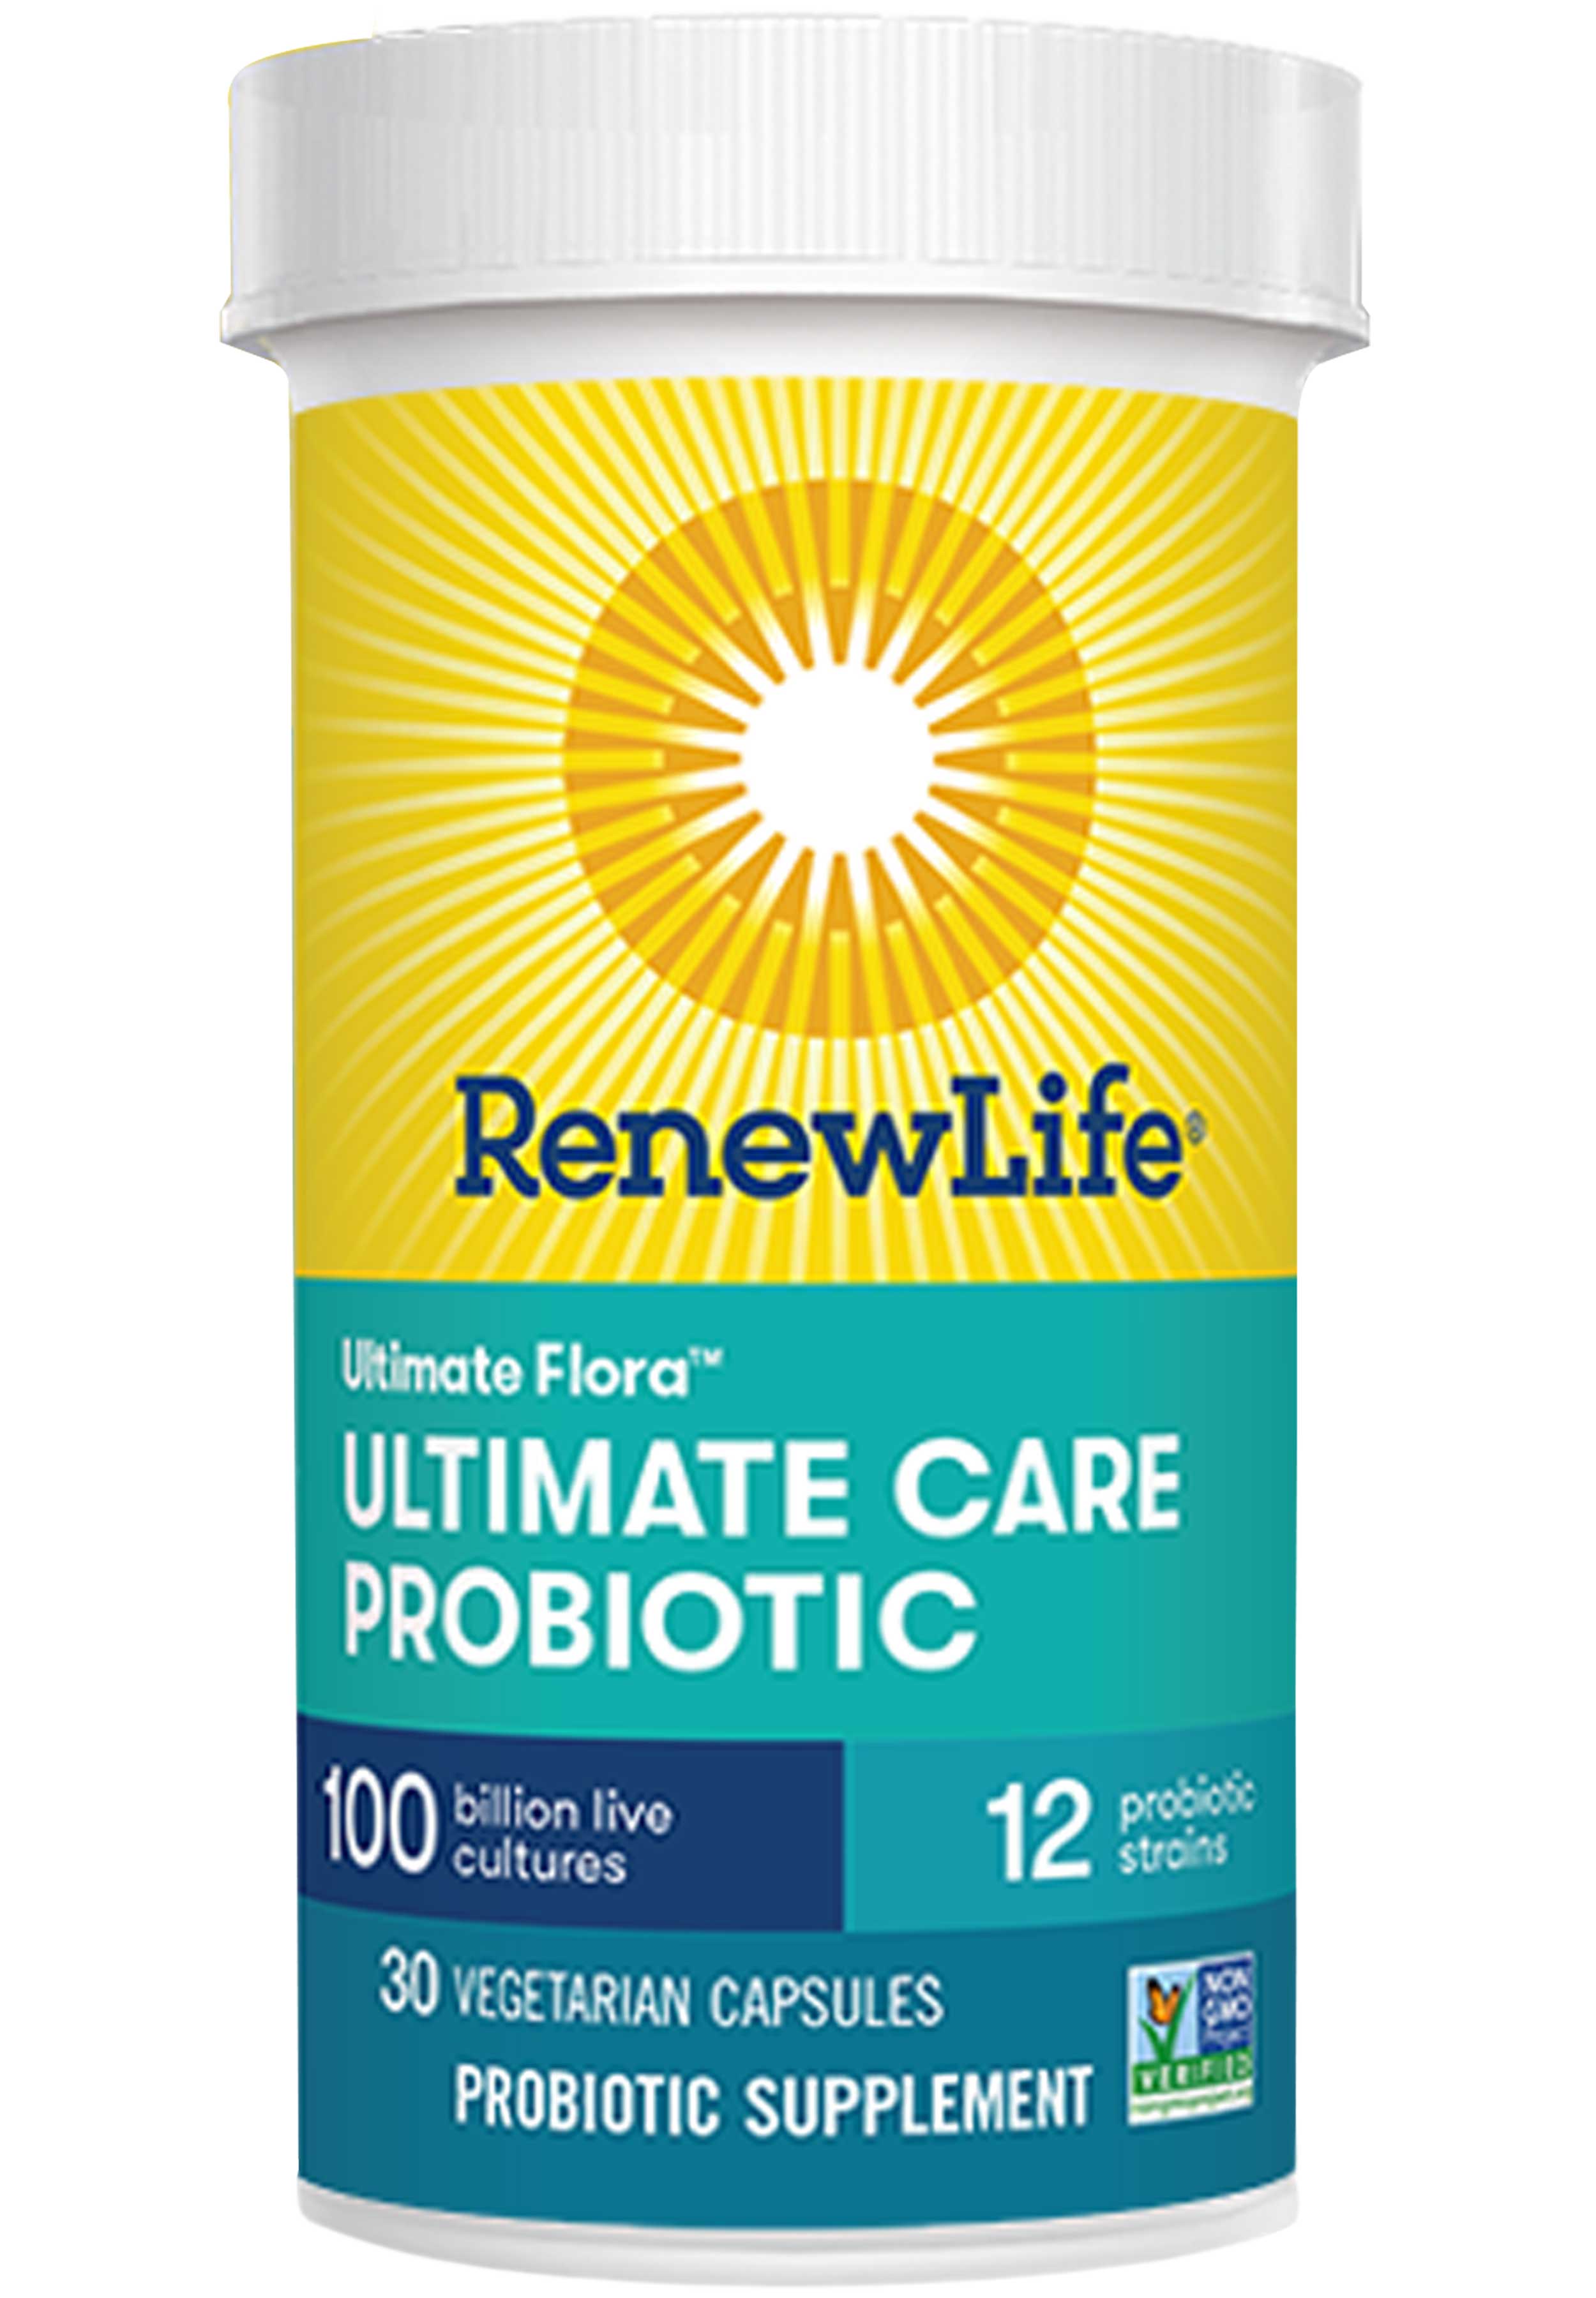 Renew Life Ultimate Flora Ultimate Care Probiotic 100 Billion